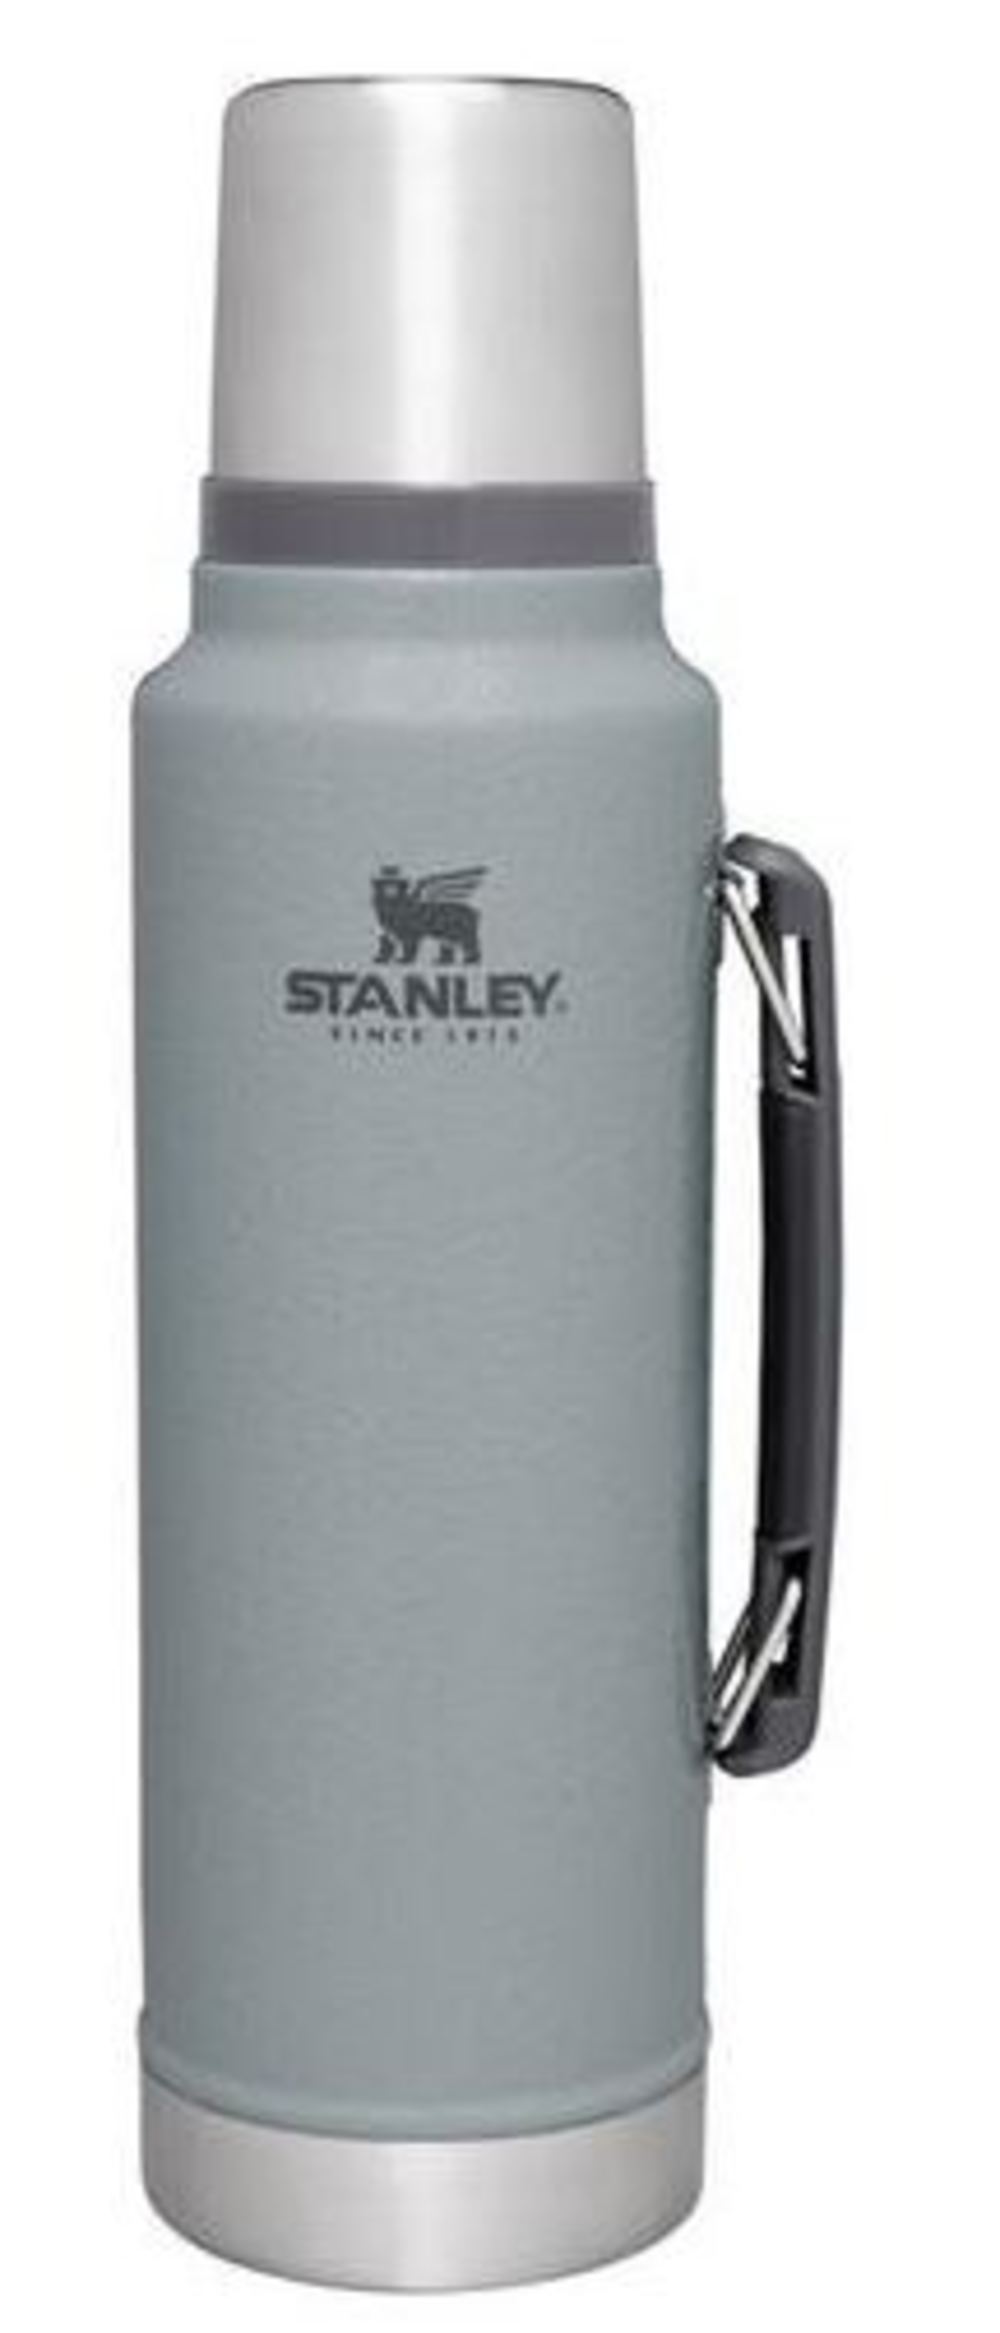 Alcott Hill® Henry Stainless Steel Jigger